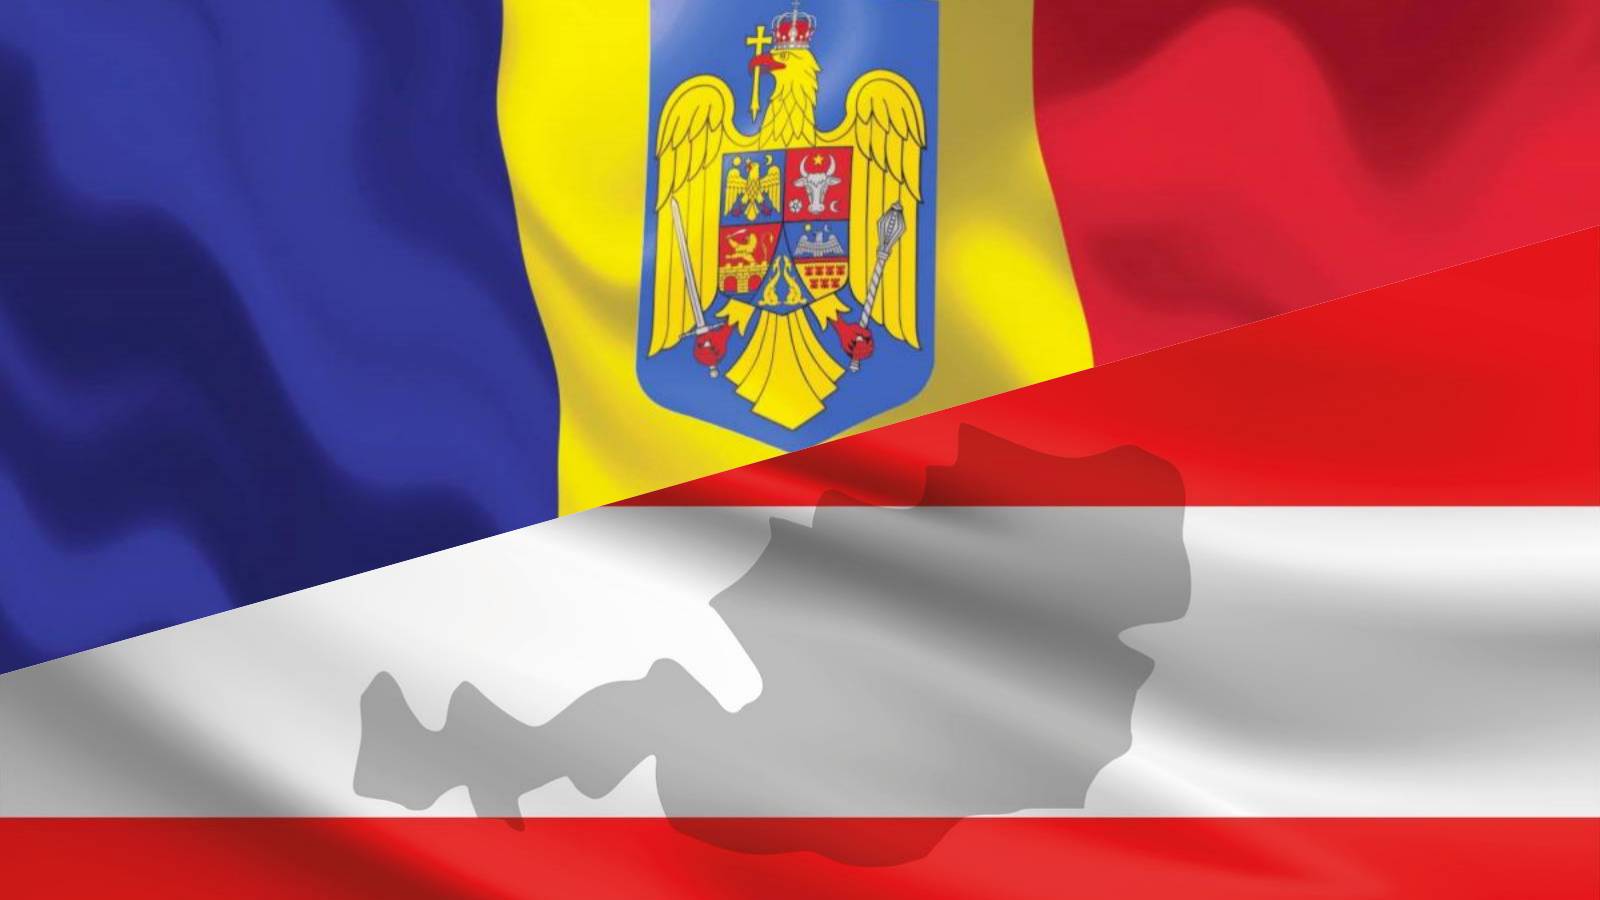 L'Autriche PRESSÉE Poursuivre les annonces IMPORTANTES Adhésion de la Roumanie à l'espace Schengen